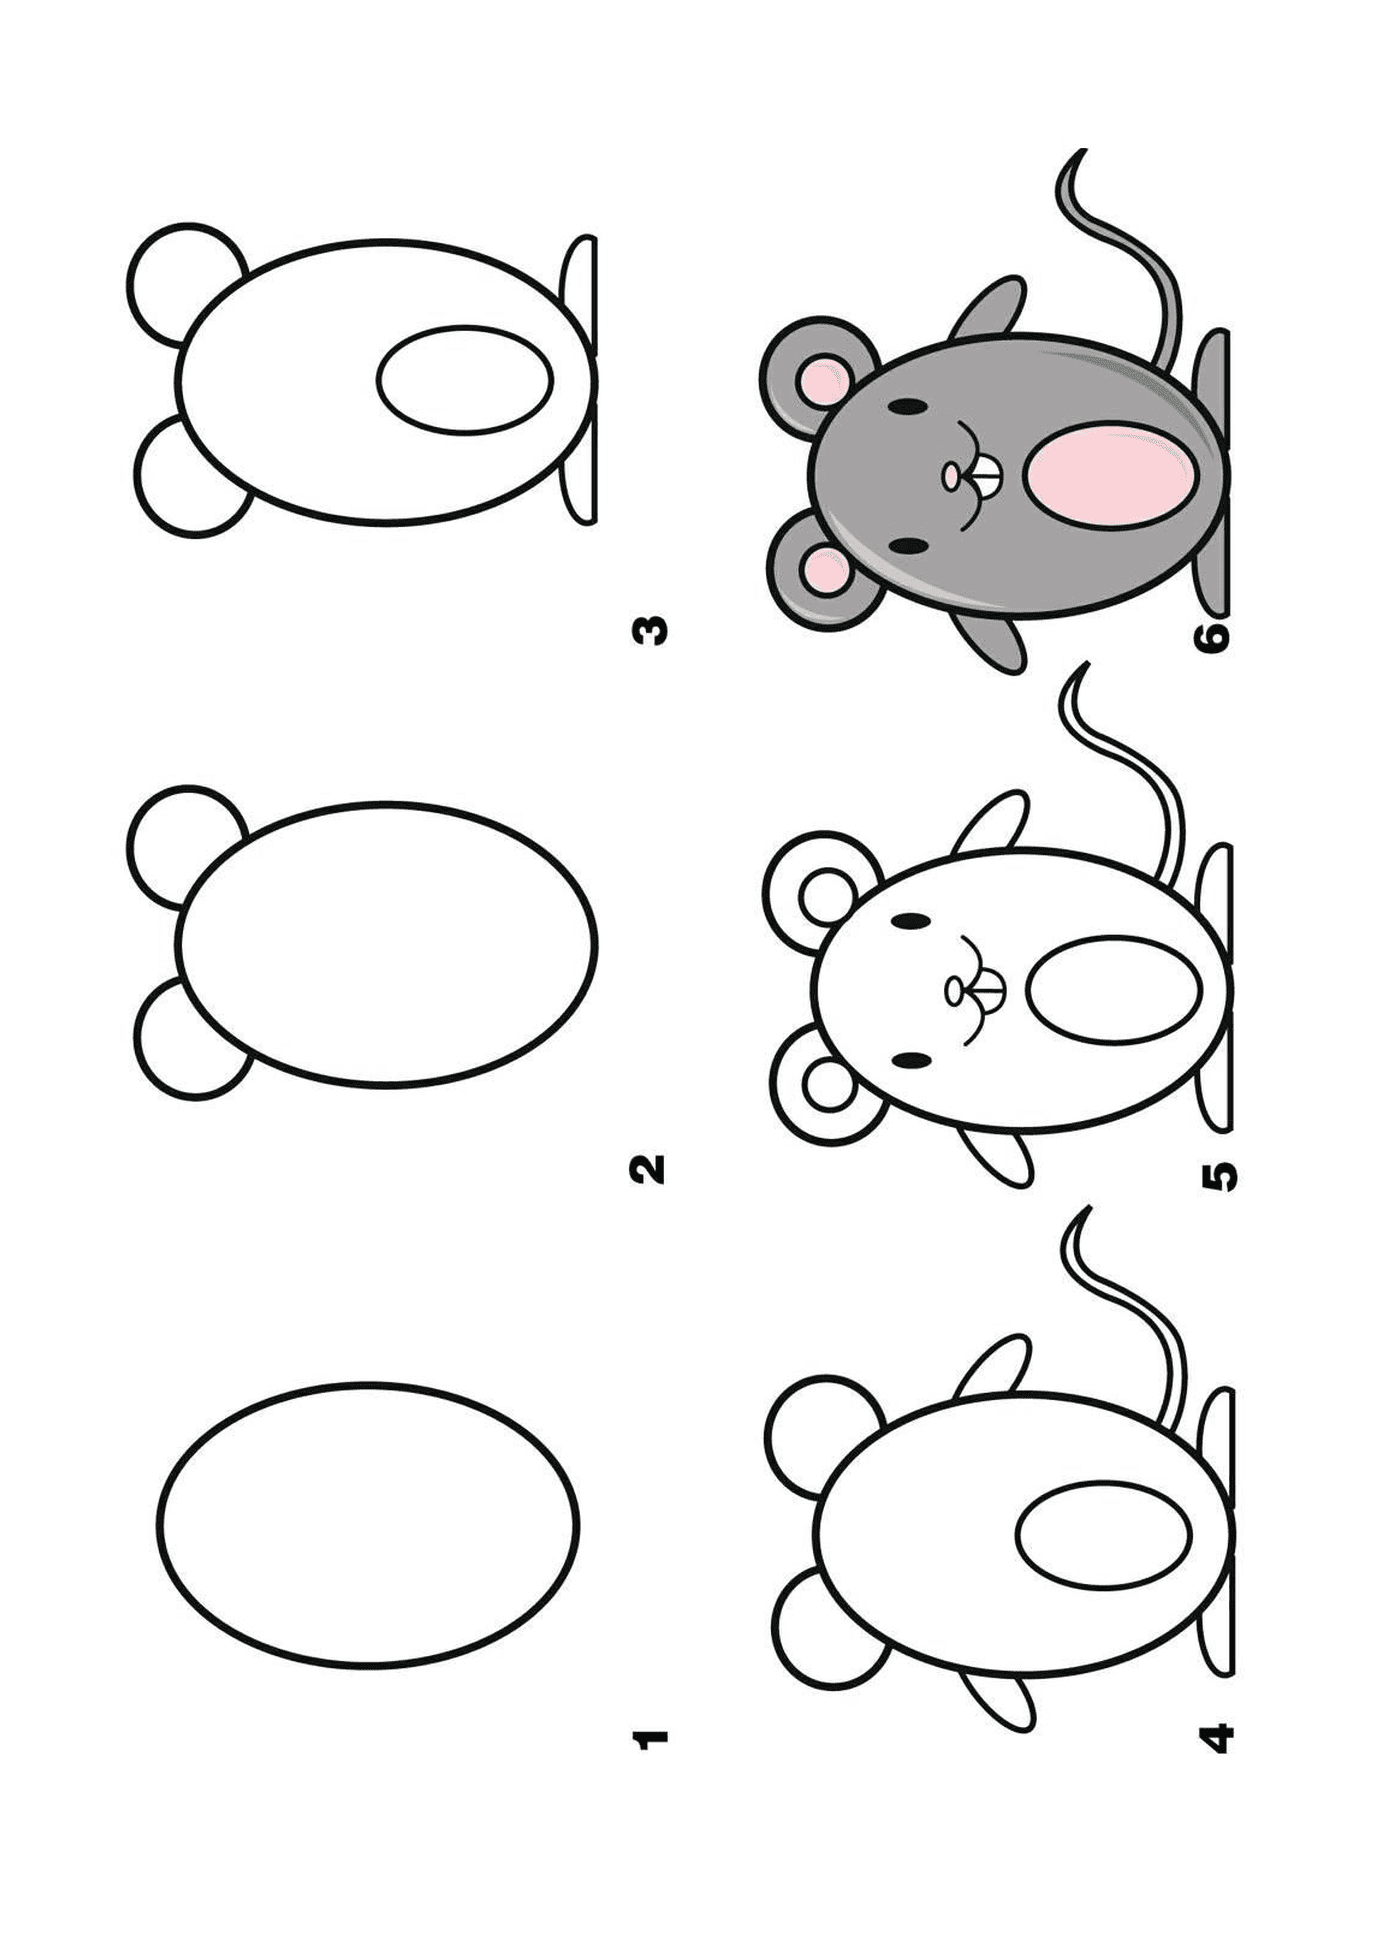   Comment dessiner une souris étape par étape 